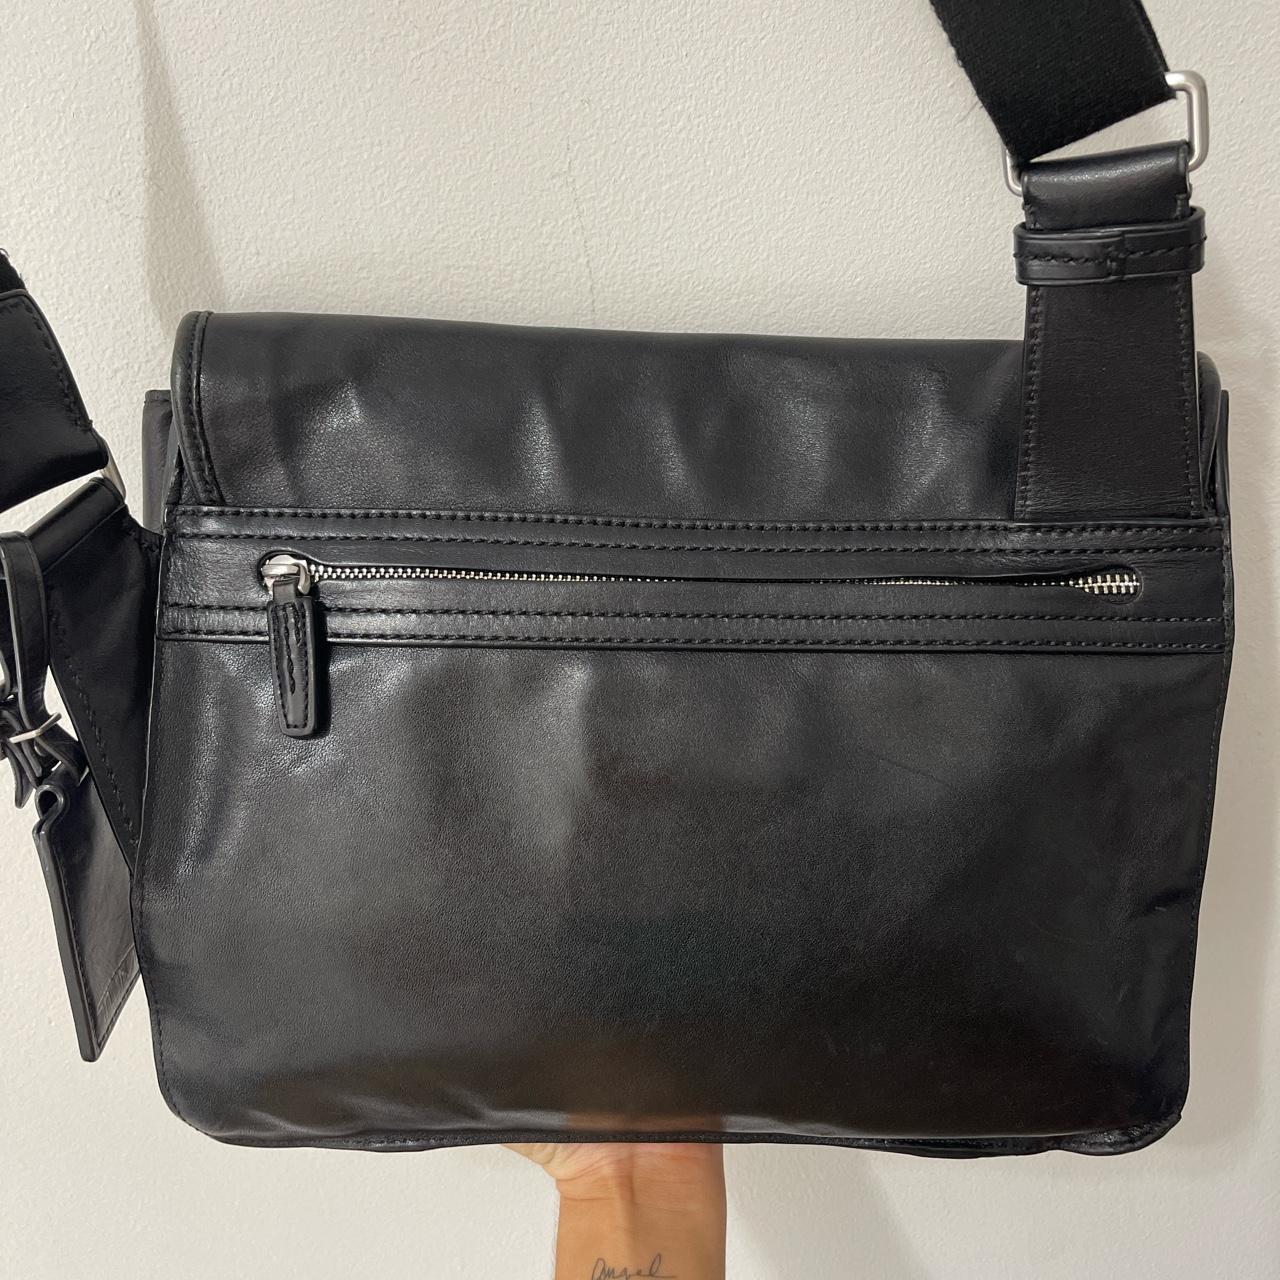 Product Image 3 - TUMI Black Leather Front Pocket